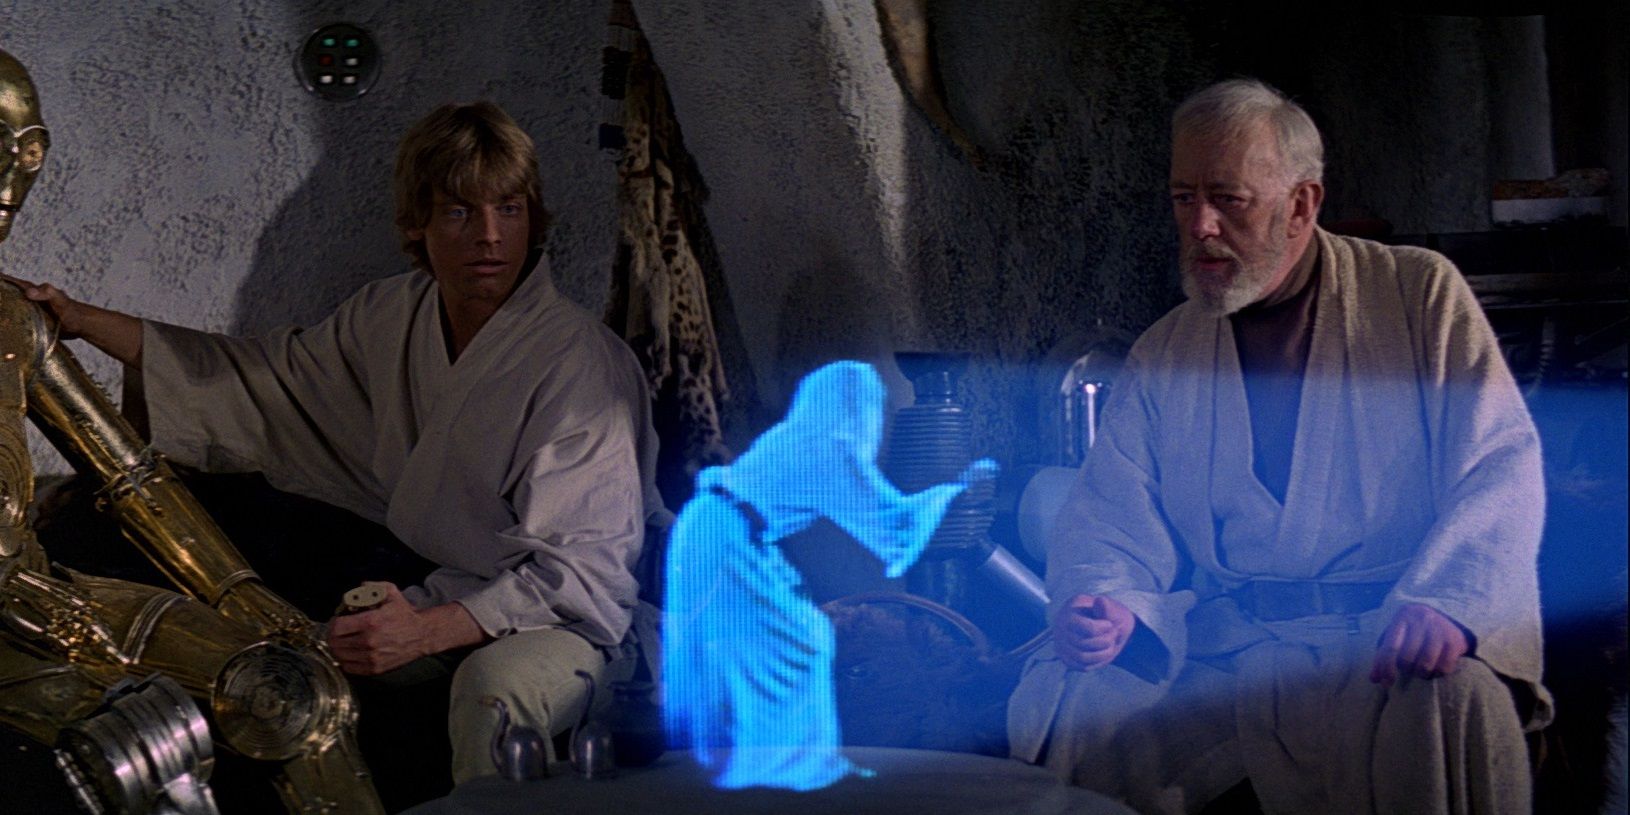 Obi-Wan and Luke watch Princess Leia's hologram in A New Hope